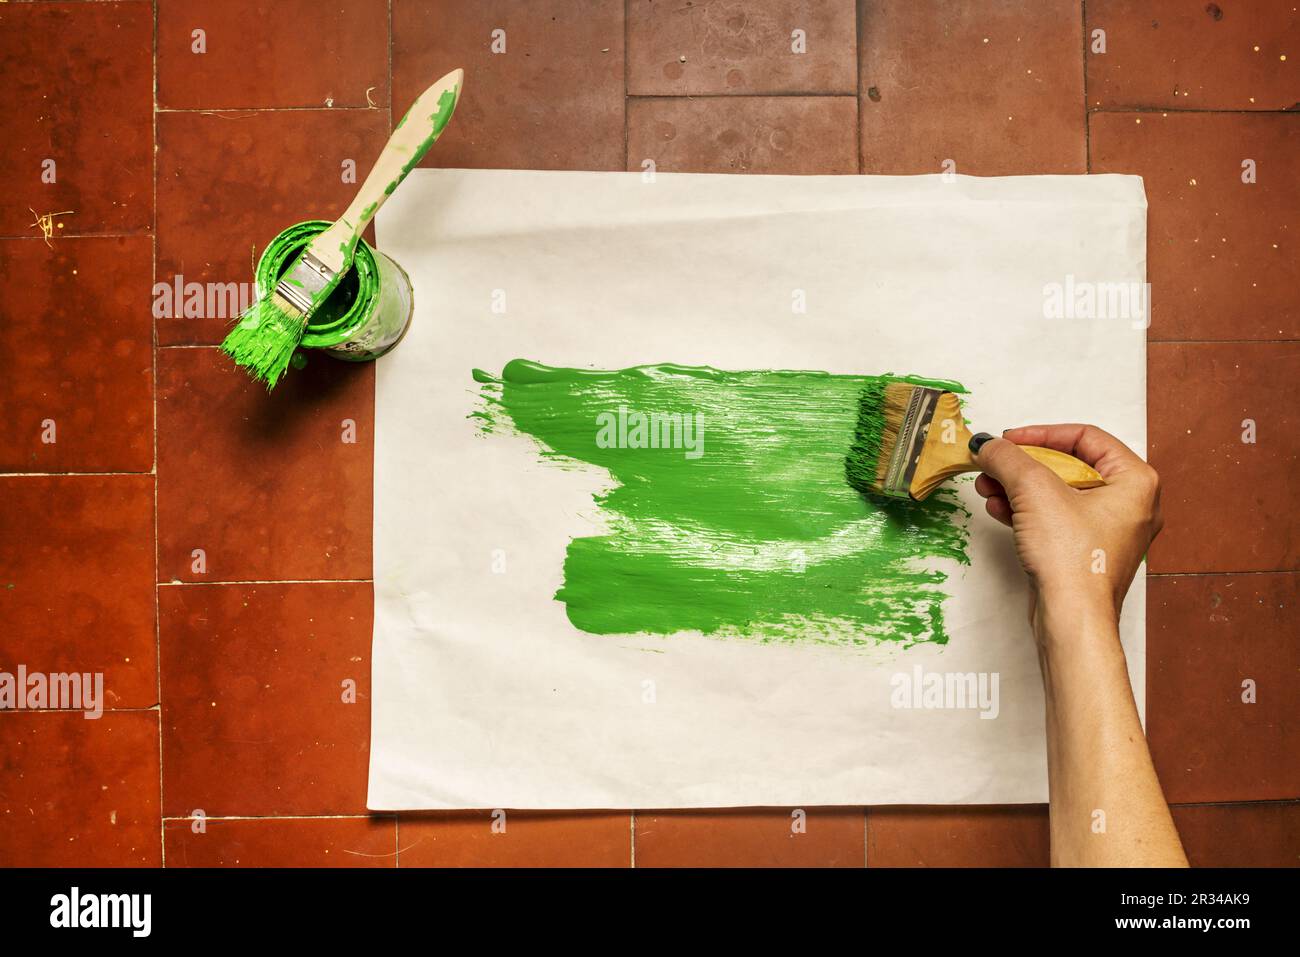 Lackierung eines Papierstapels mit einem Topf grüner synthetischer Emailfarbe mit verschiedenen Pinseln Stockfoto